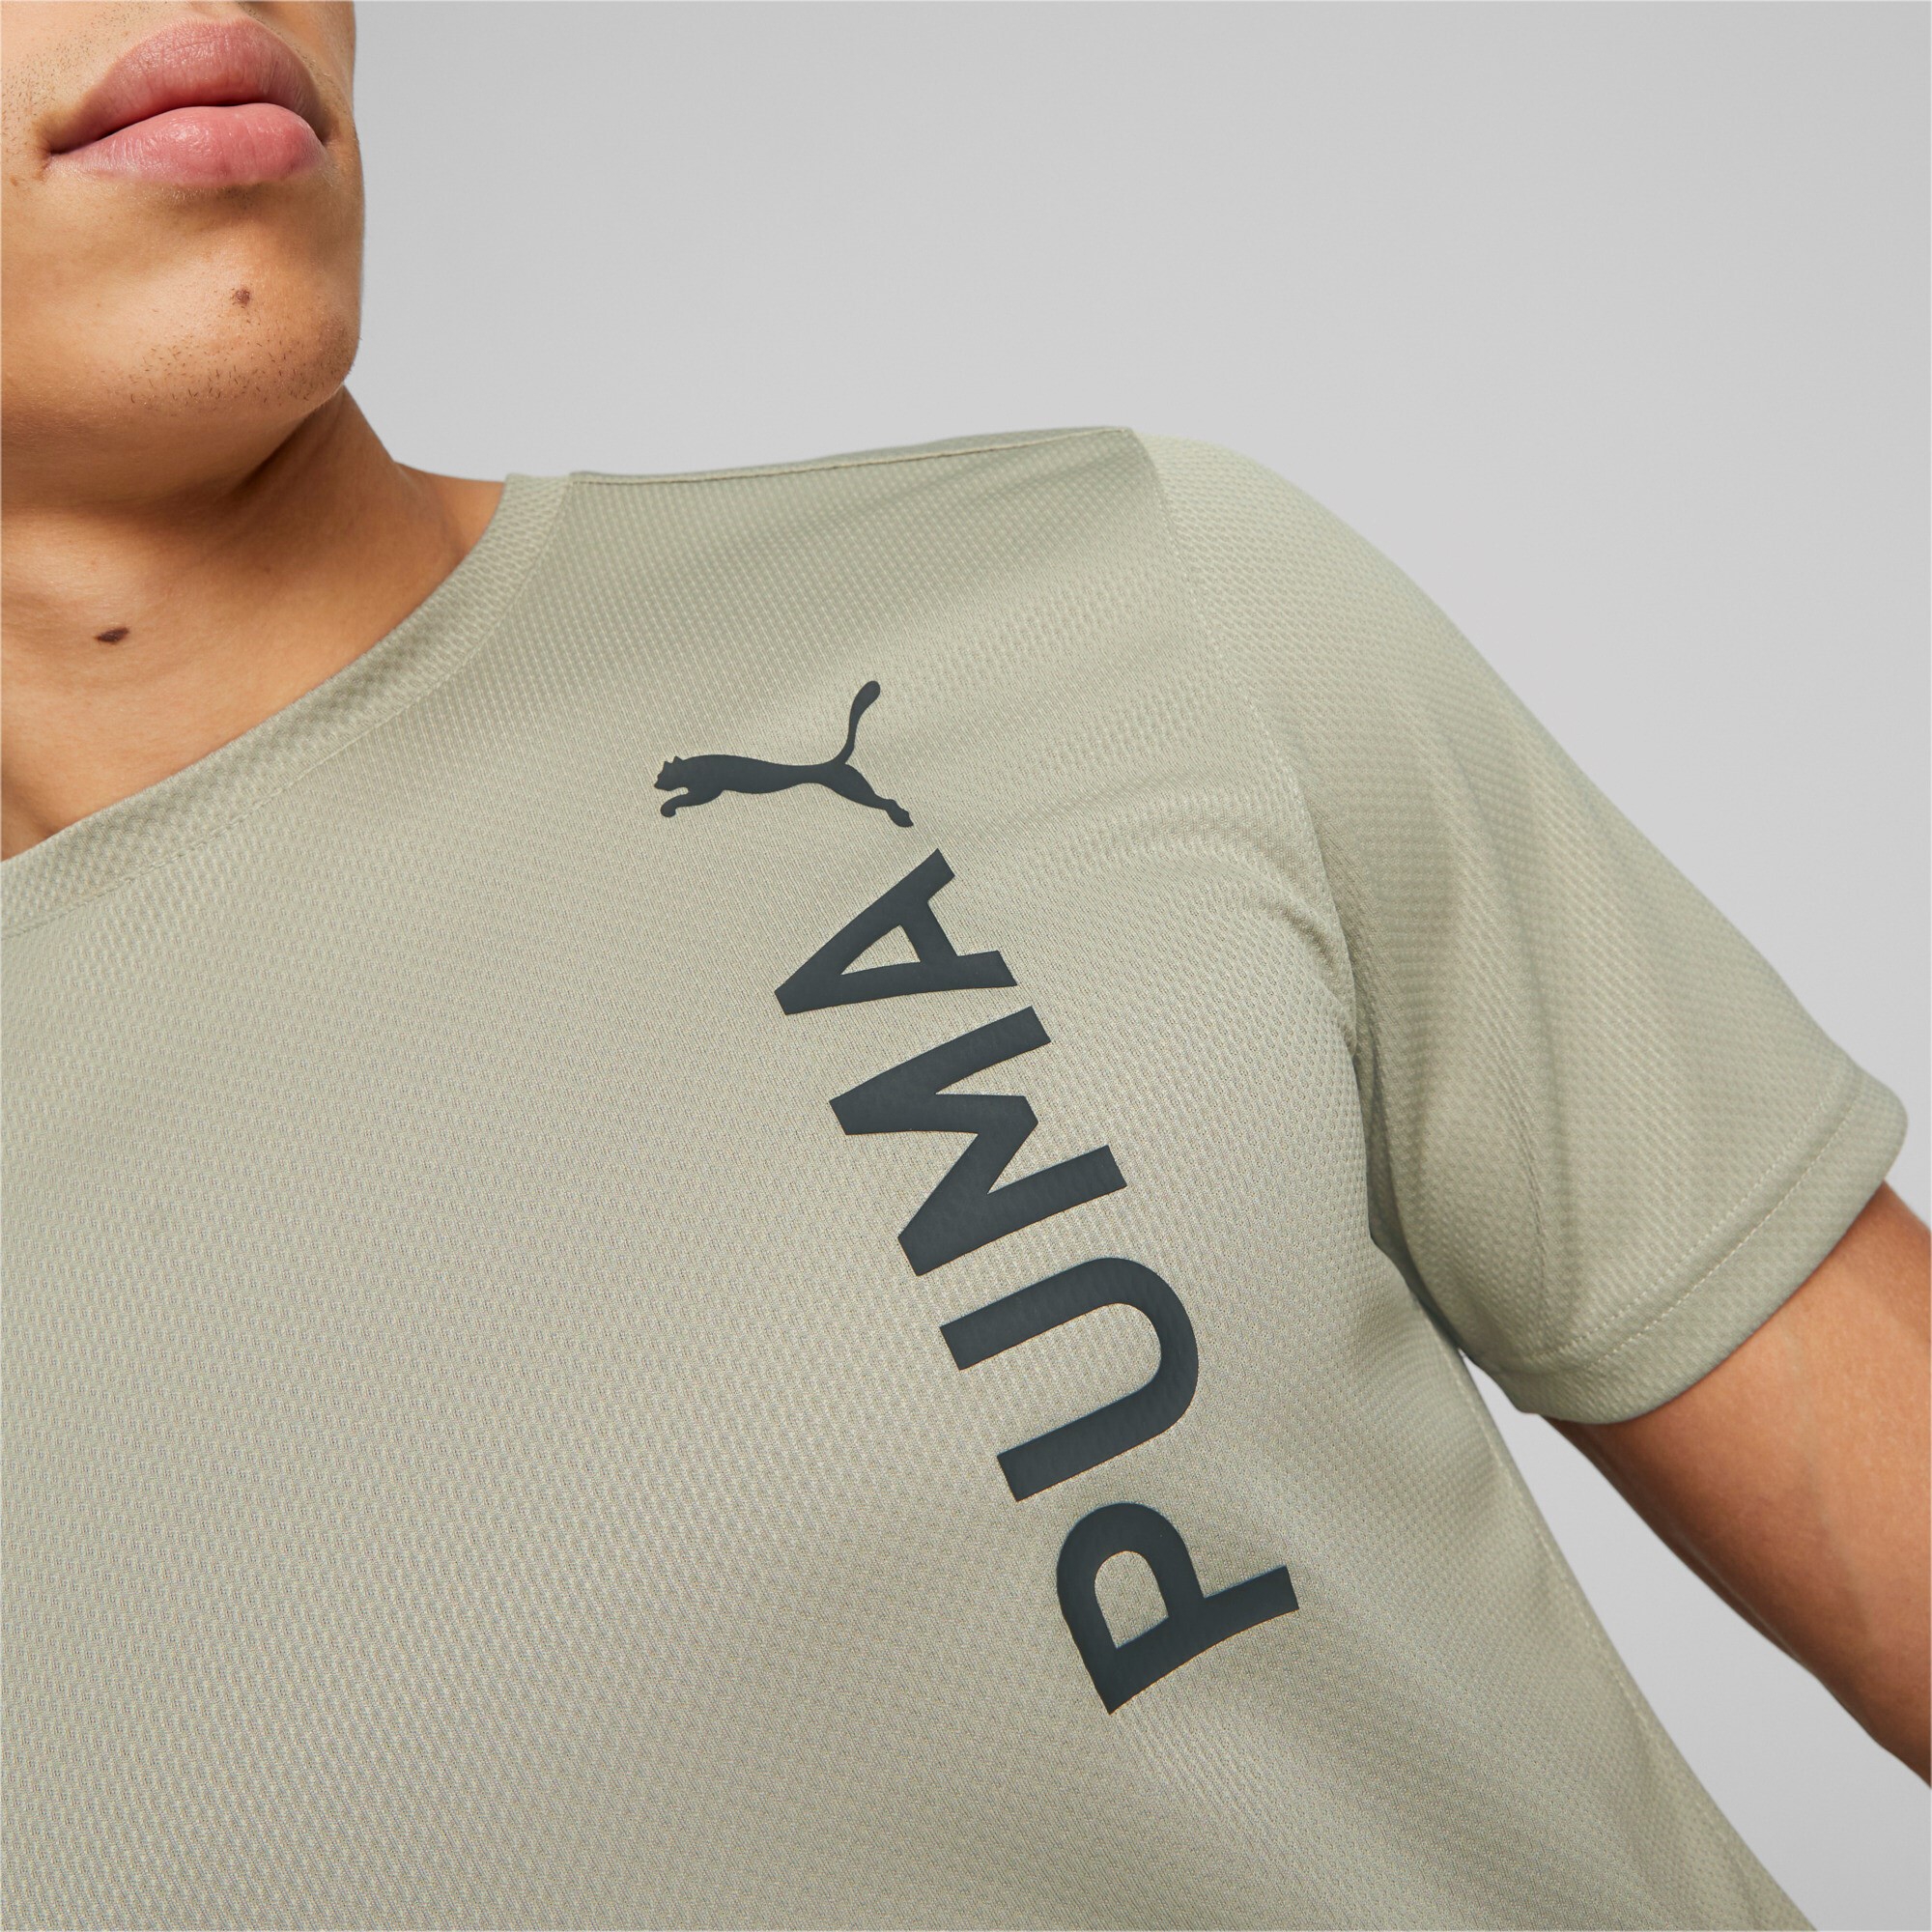 Puma - Puma Fit Ultrabreathe Tee Q2, Shirt